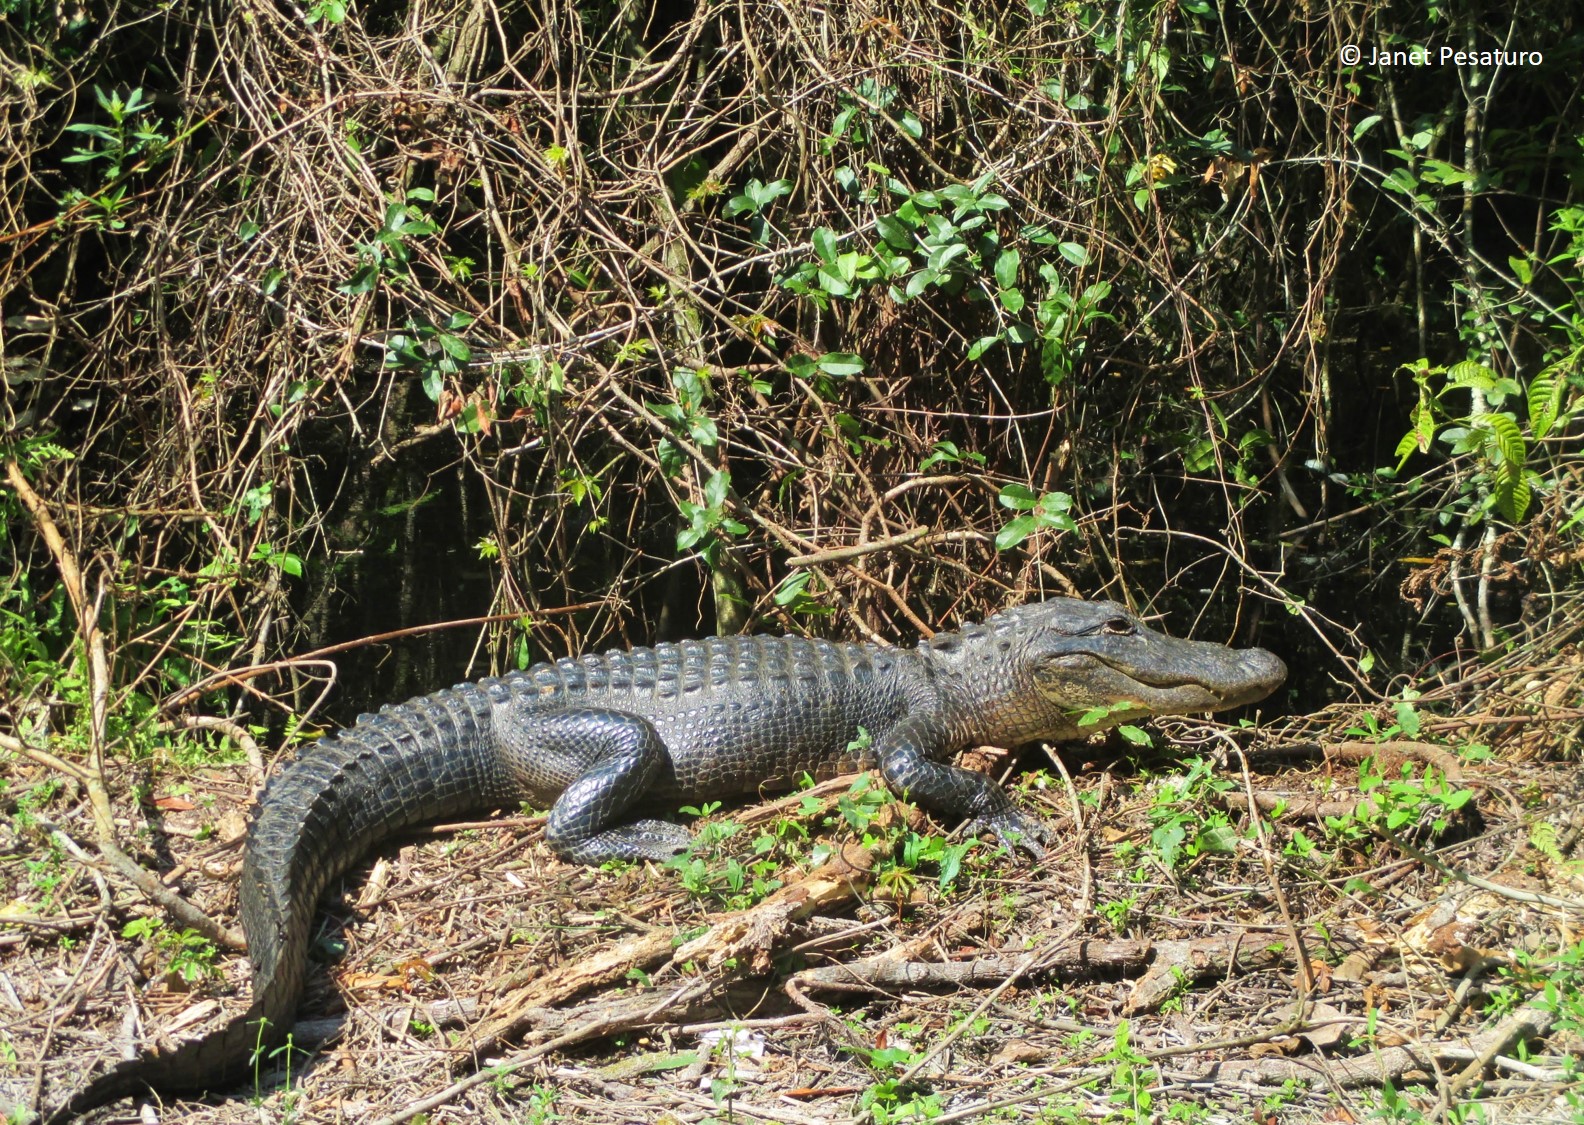 a larger alligator basking